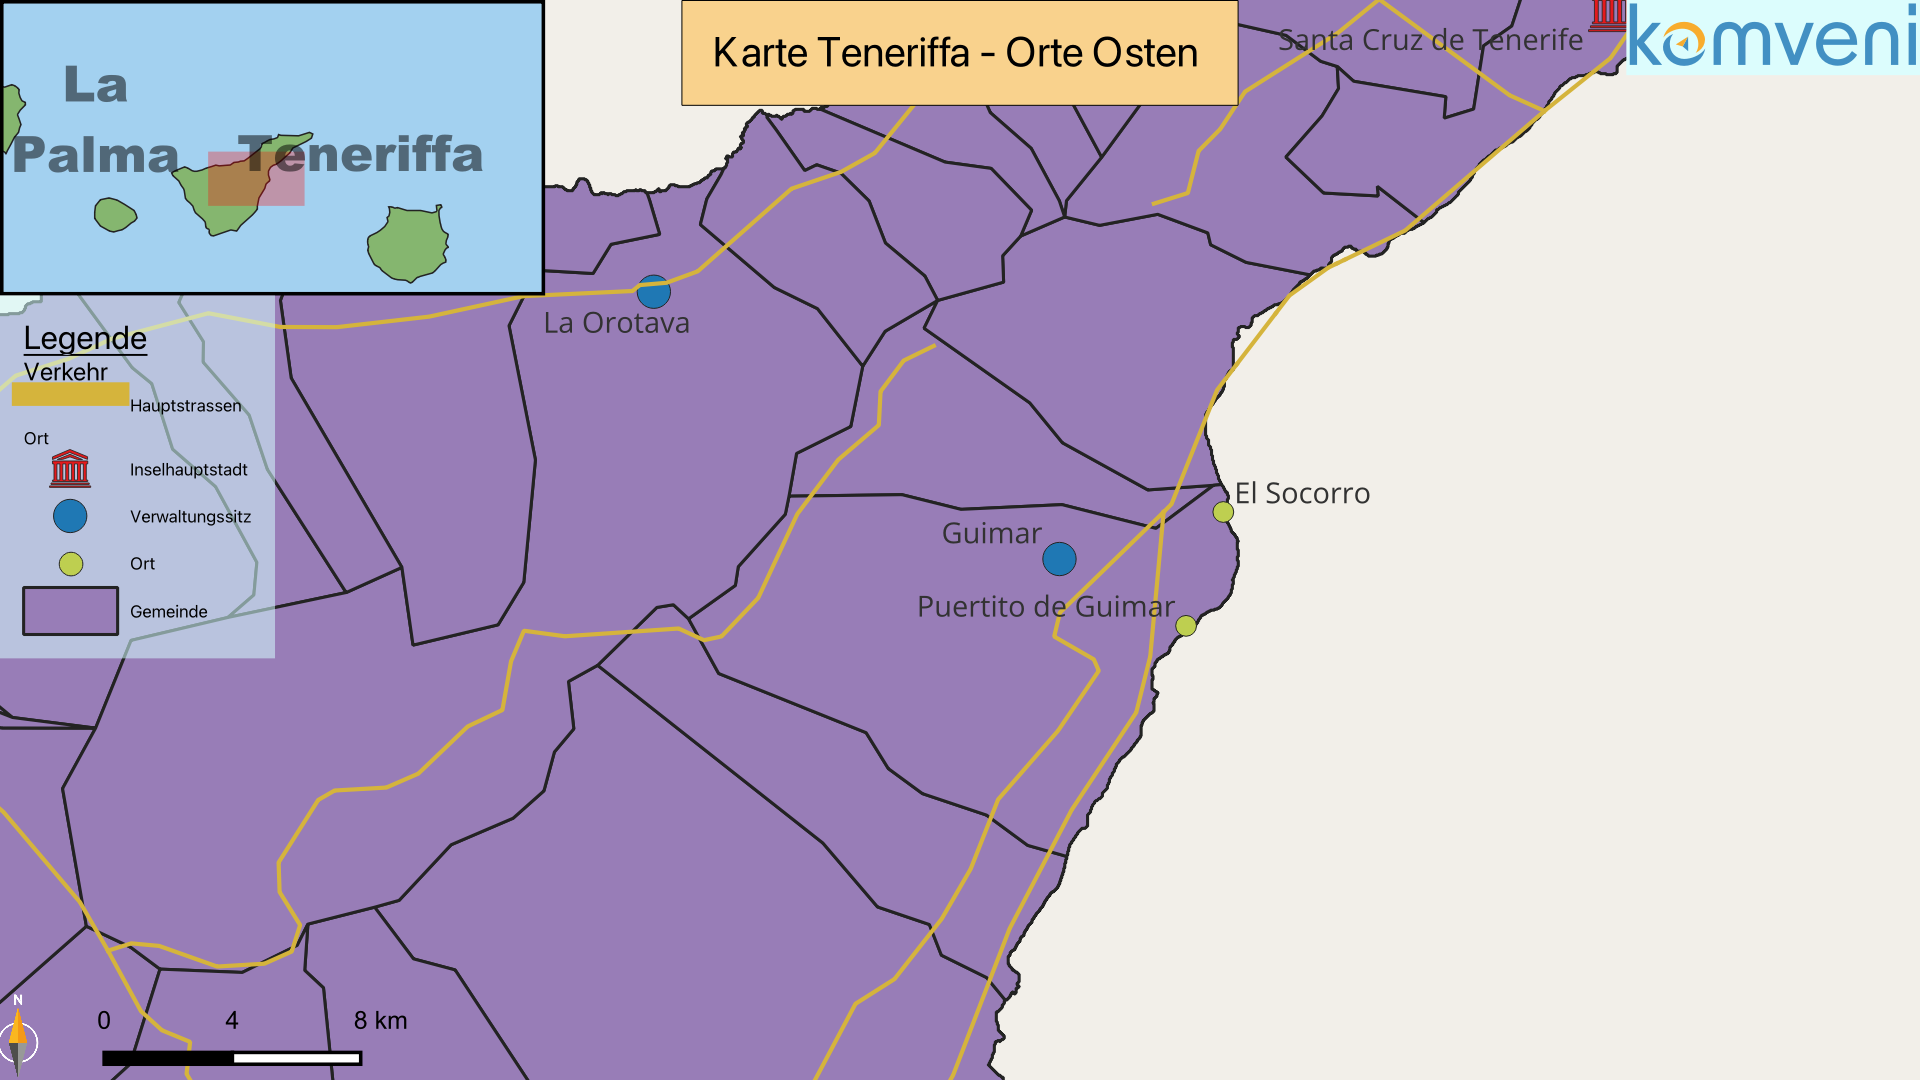 Karte Teneriffa Orte Osten